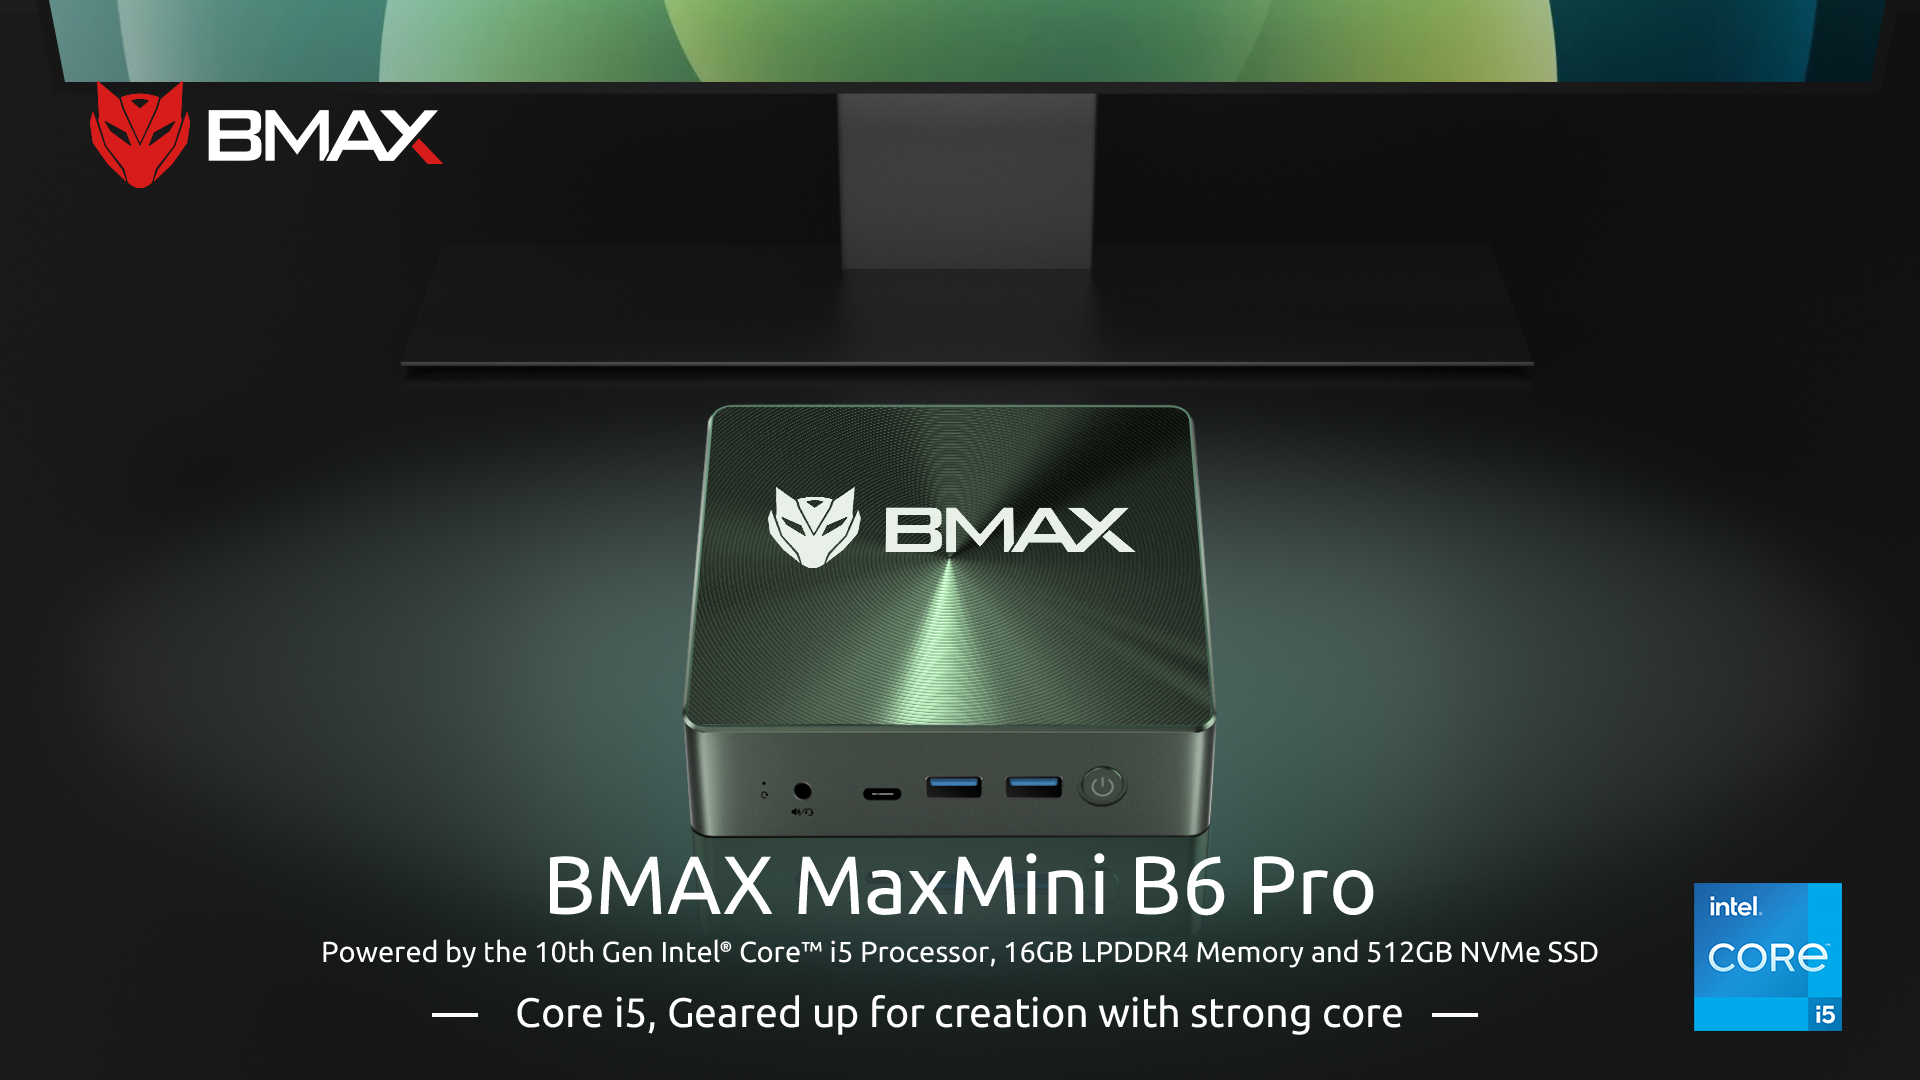 Bmax B7 Pro ミニPC